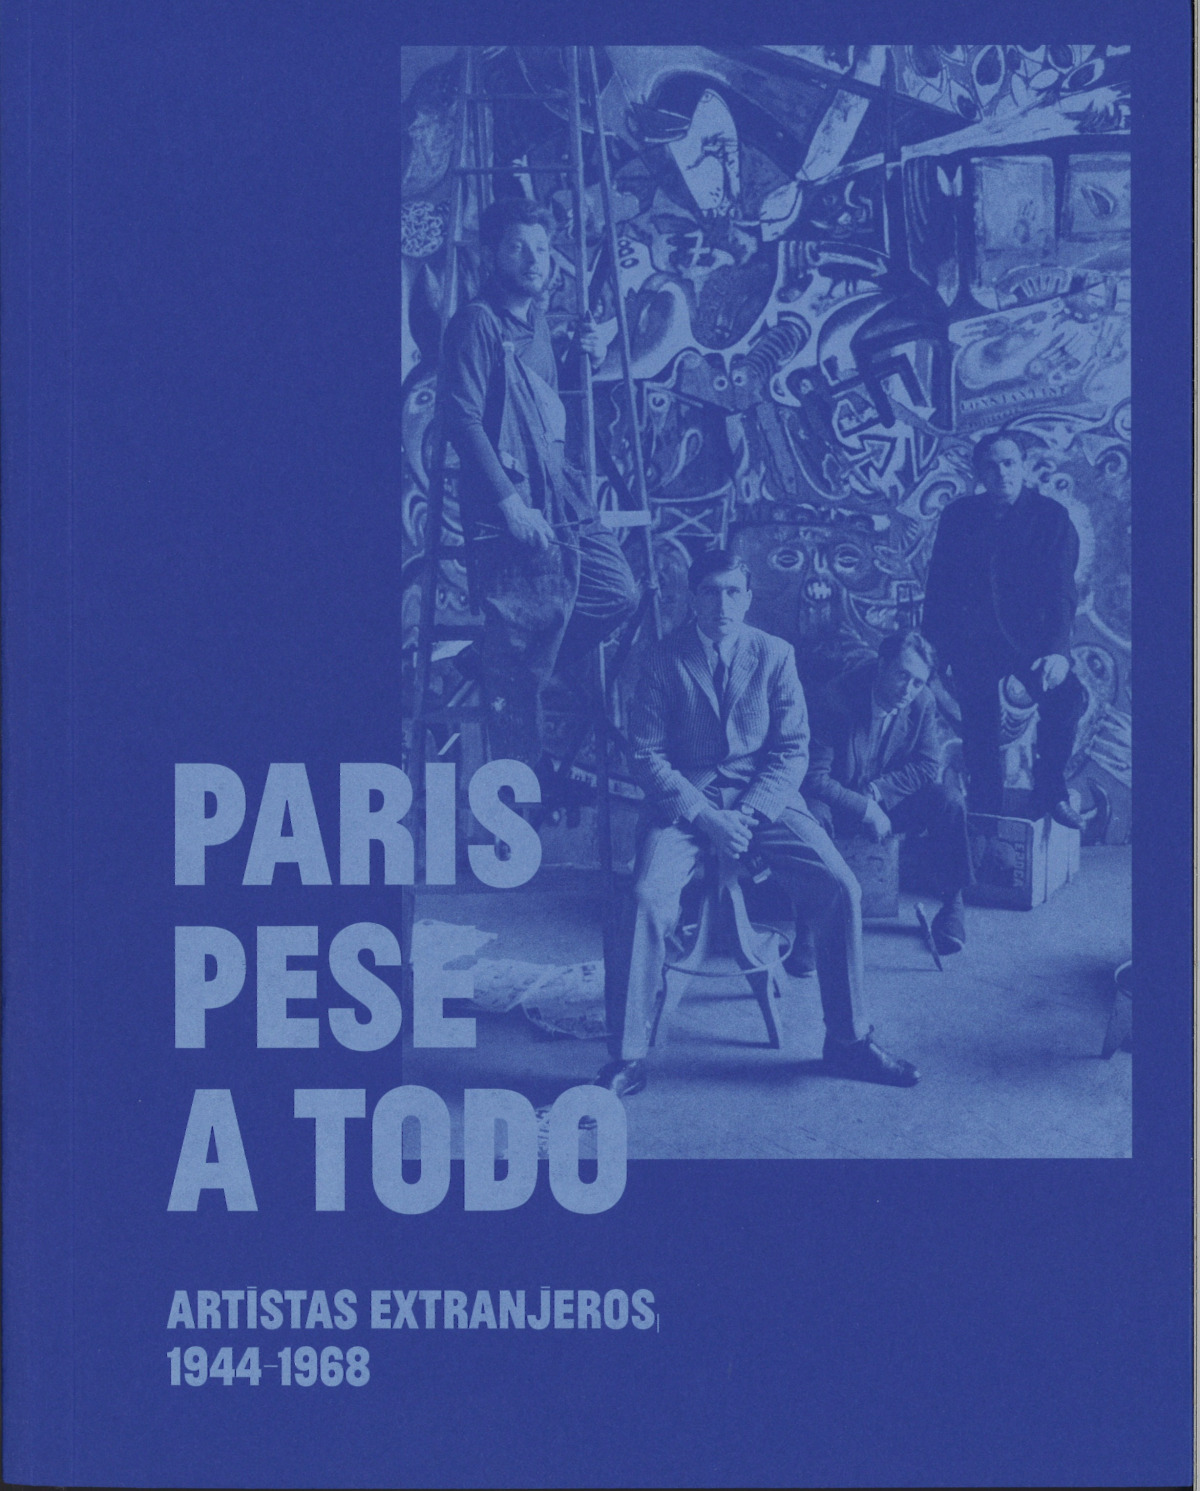 Paris pese a todo artistas extranjeros 1944 1968 - M Cultura